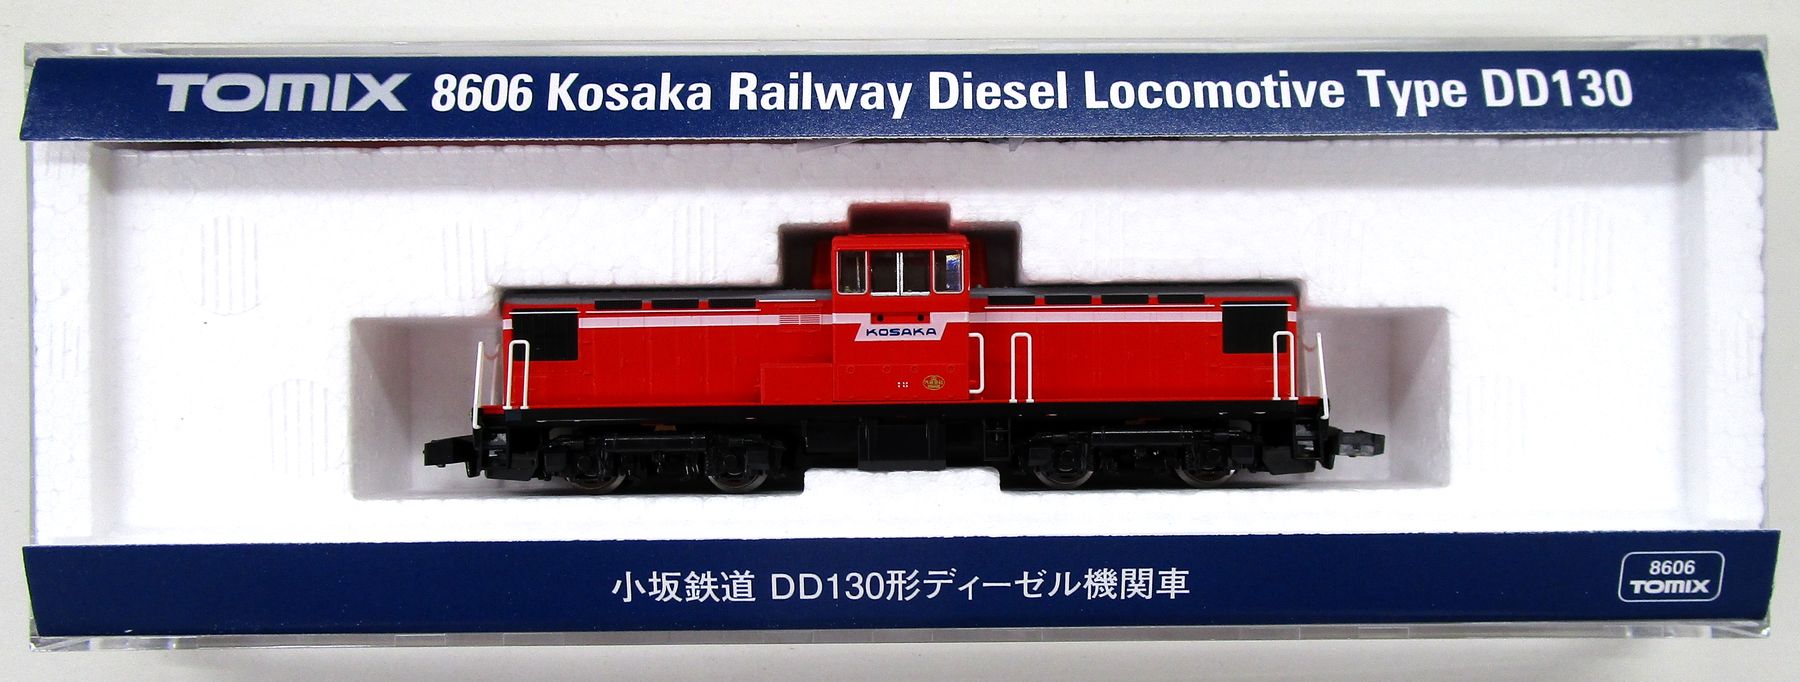 【中古】Nゲージ TOMIX(トミックス) 8606 小坂鉄道 DD130形ディーゼル機関車 【A】